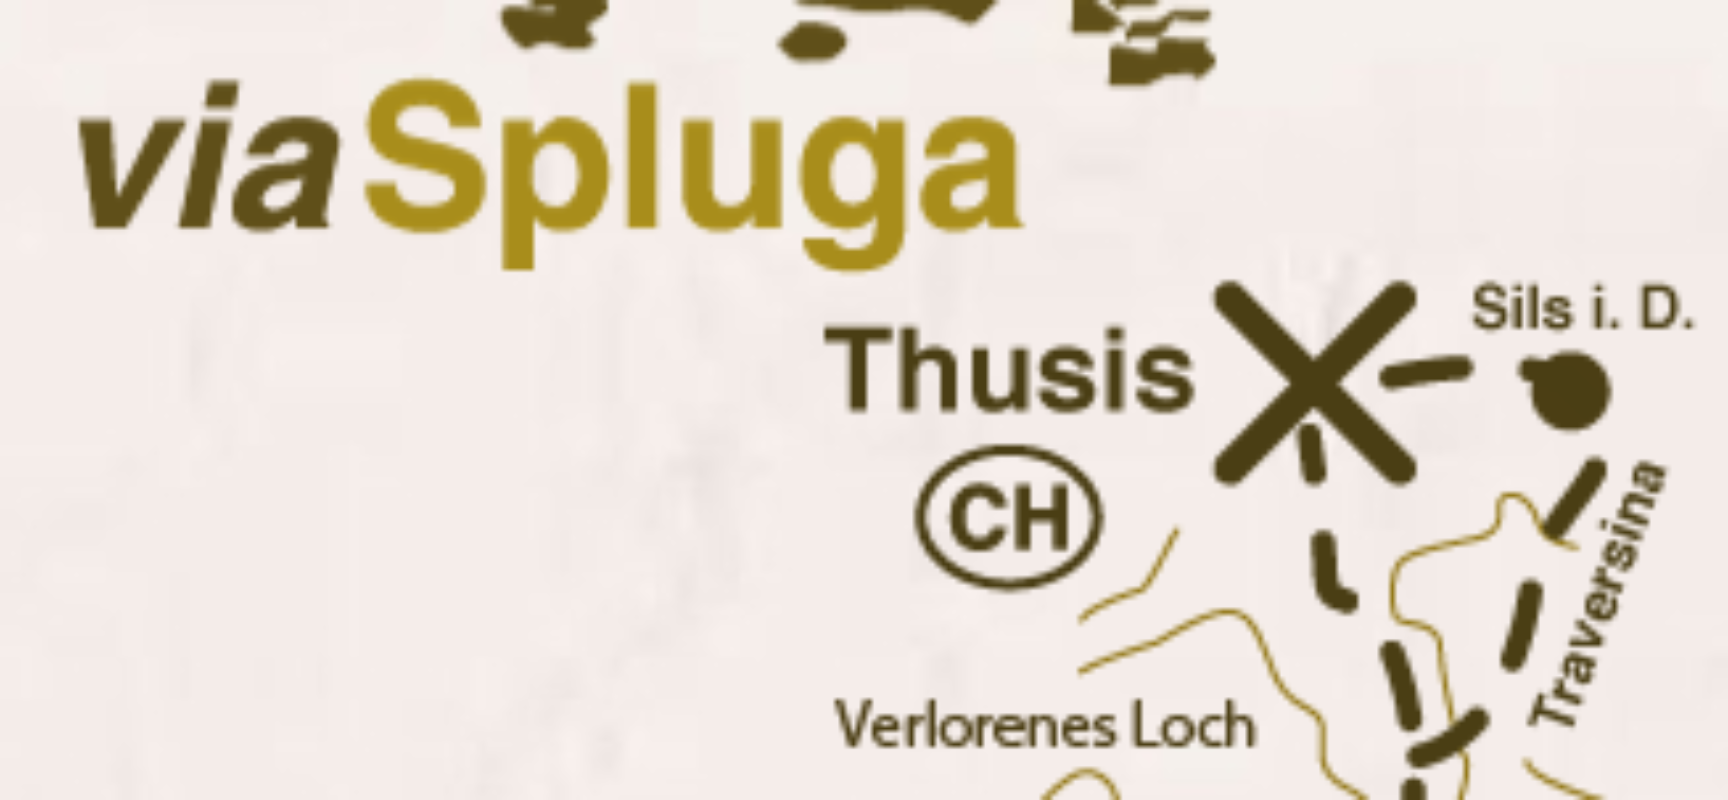 Thusis: Verlorenes Loch wegen Steinschlag gesperrt